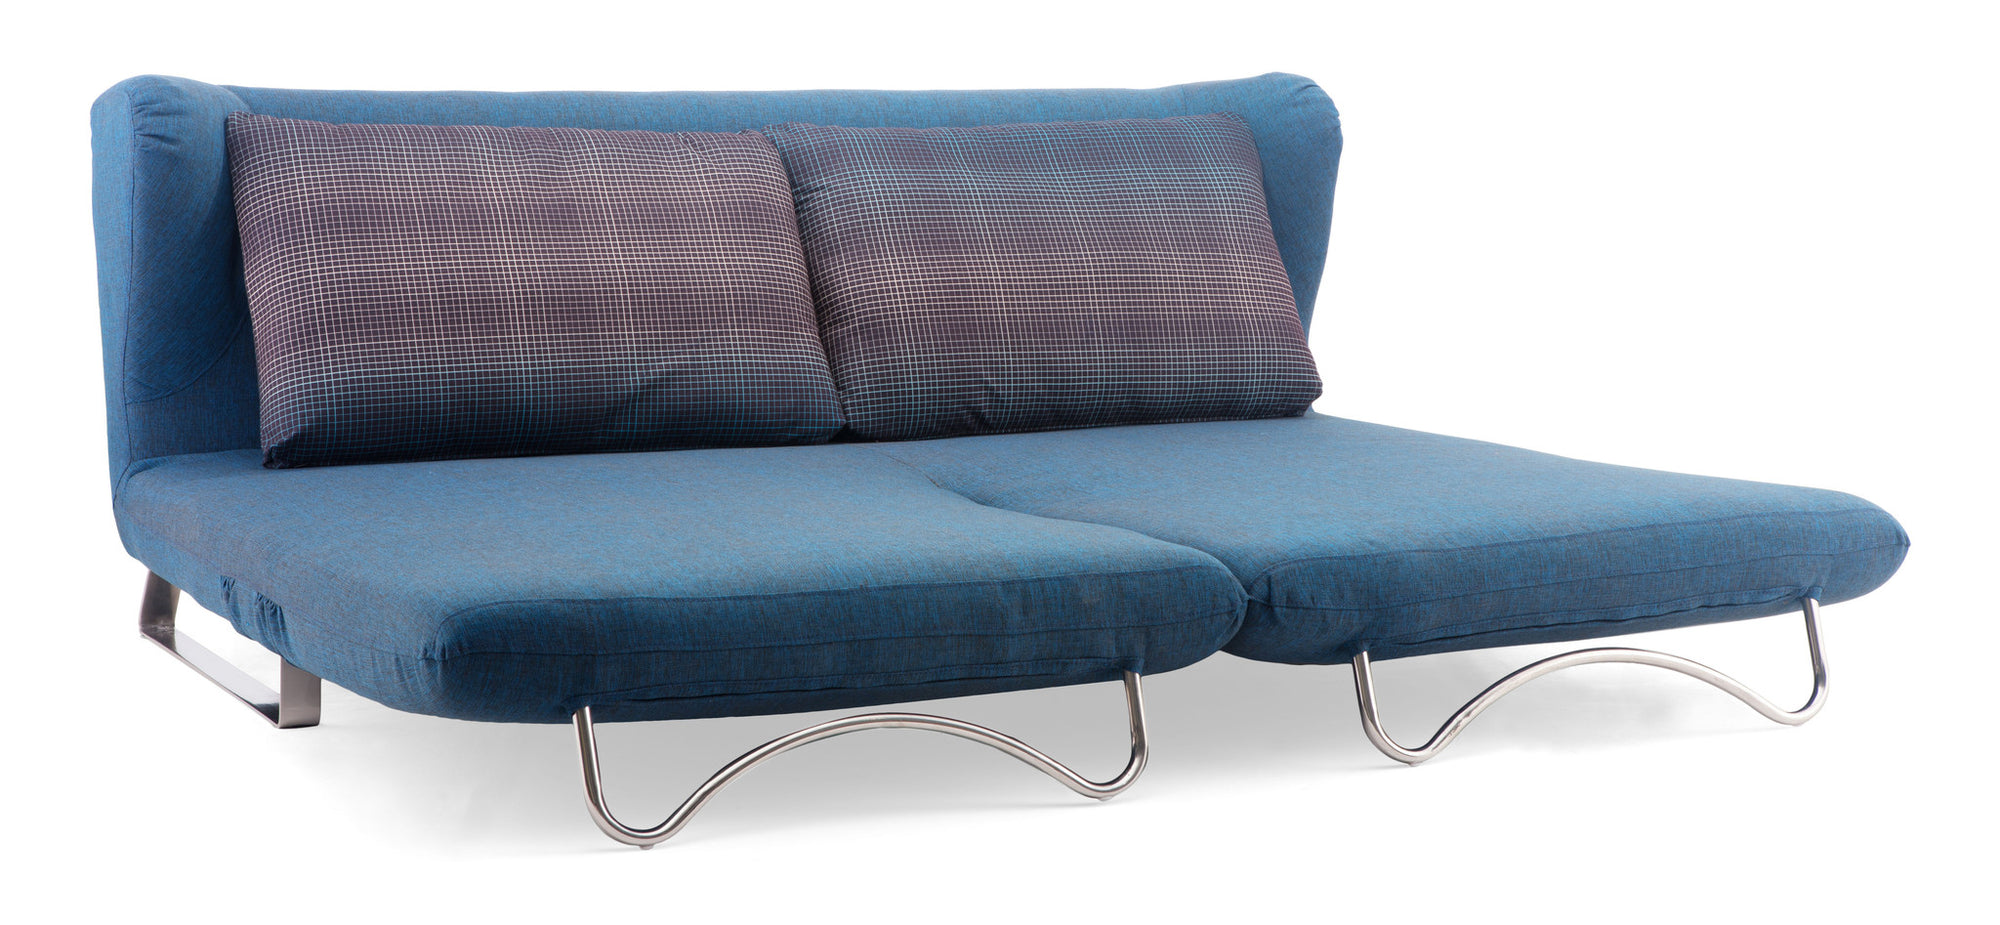 Chester Sofa Sleeper Cowboy Blue Body & Shadow Grid Cushion